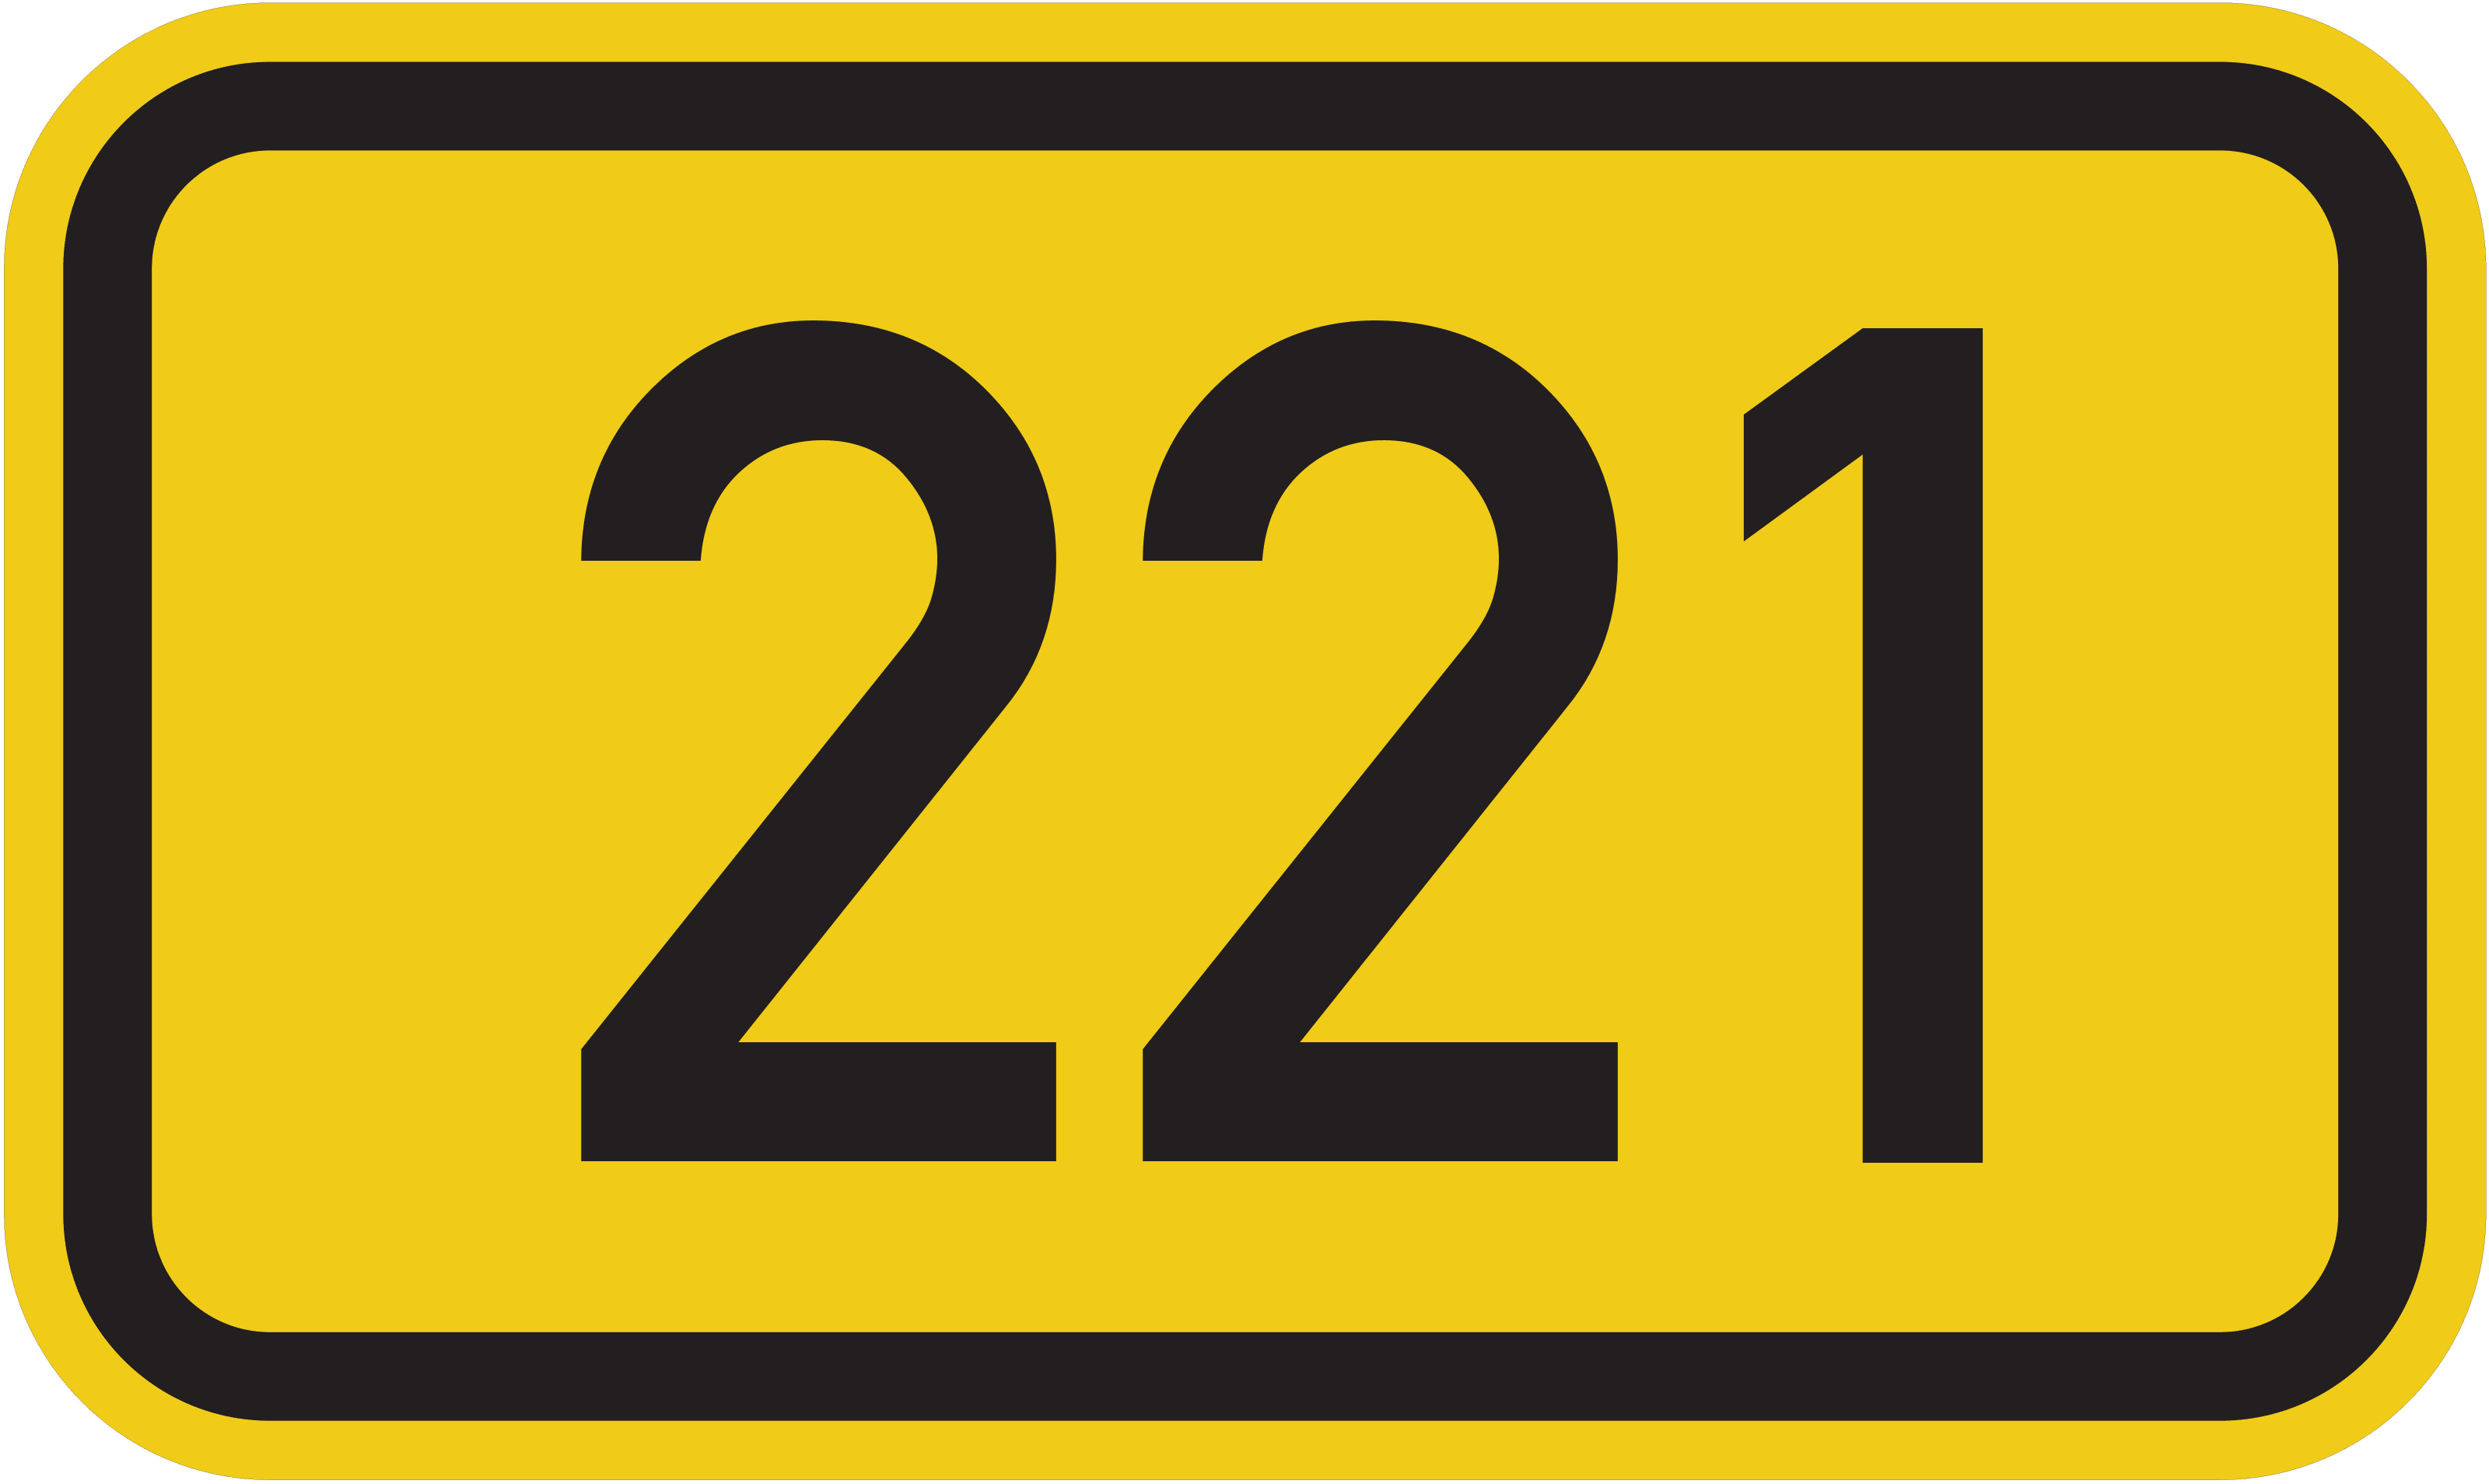 Bundesstraße B 221